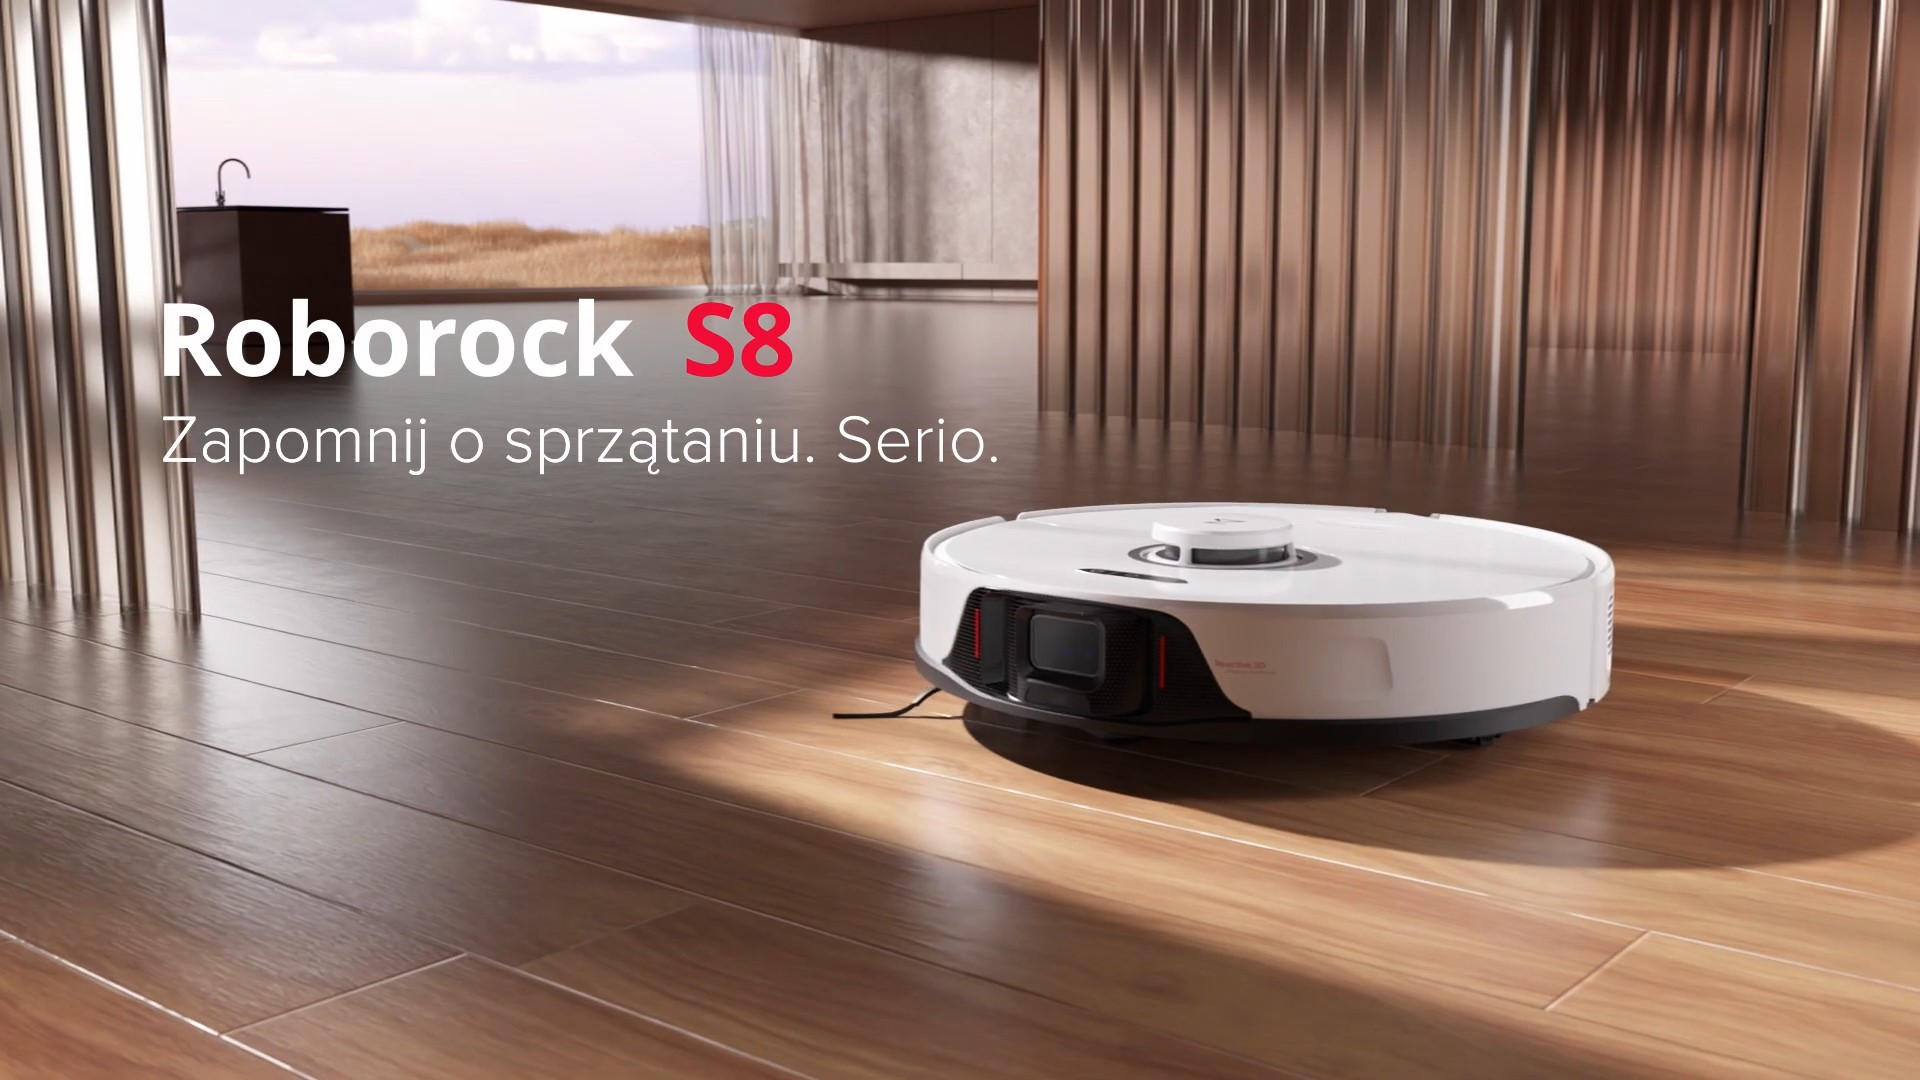 Premiera robota sprzątającego Roborock S8. Teraz w promocyjnej cenie